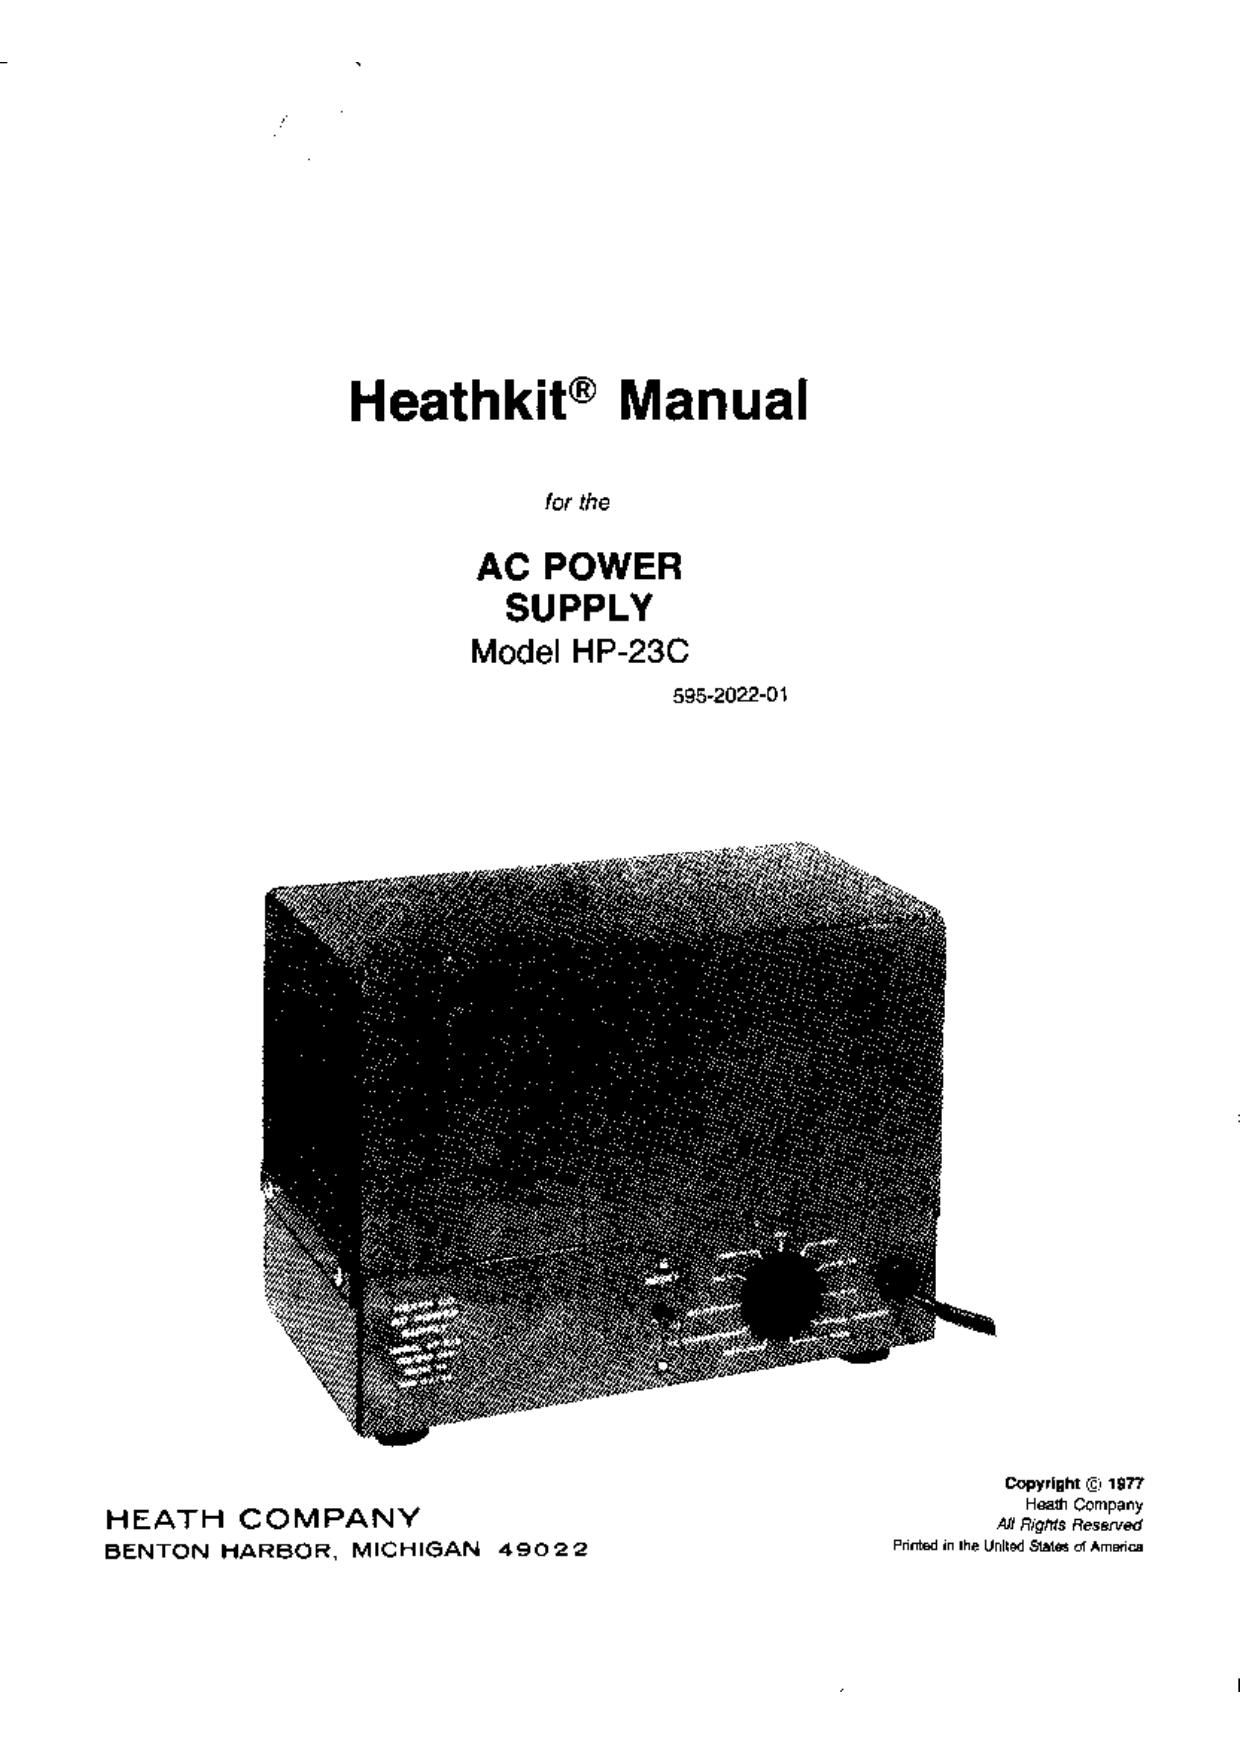 Heathkit HP 23C Manual